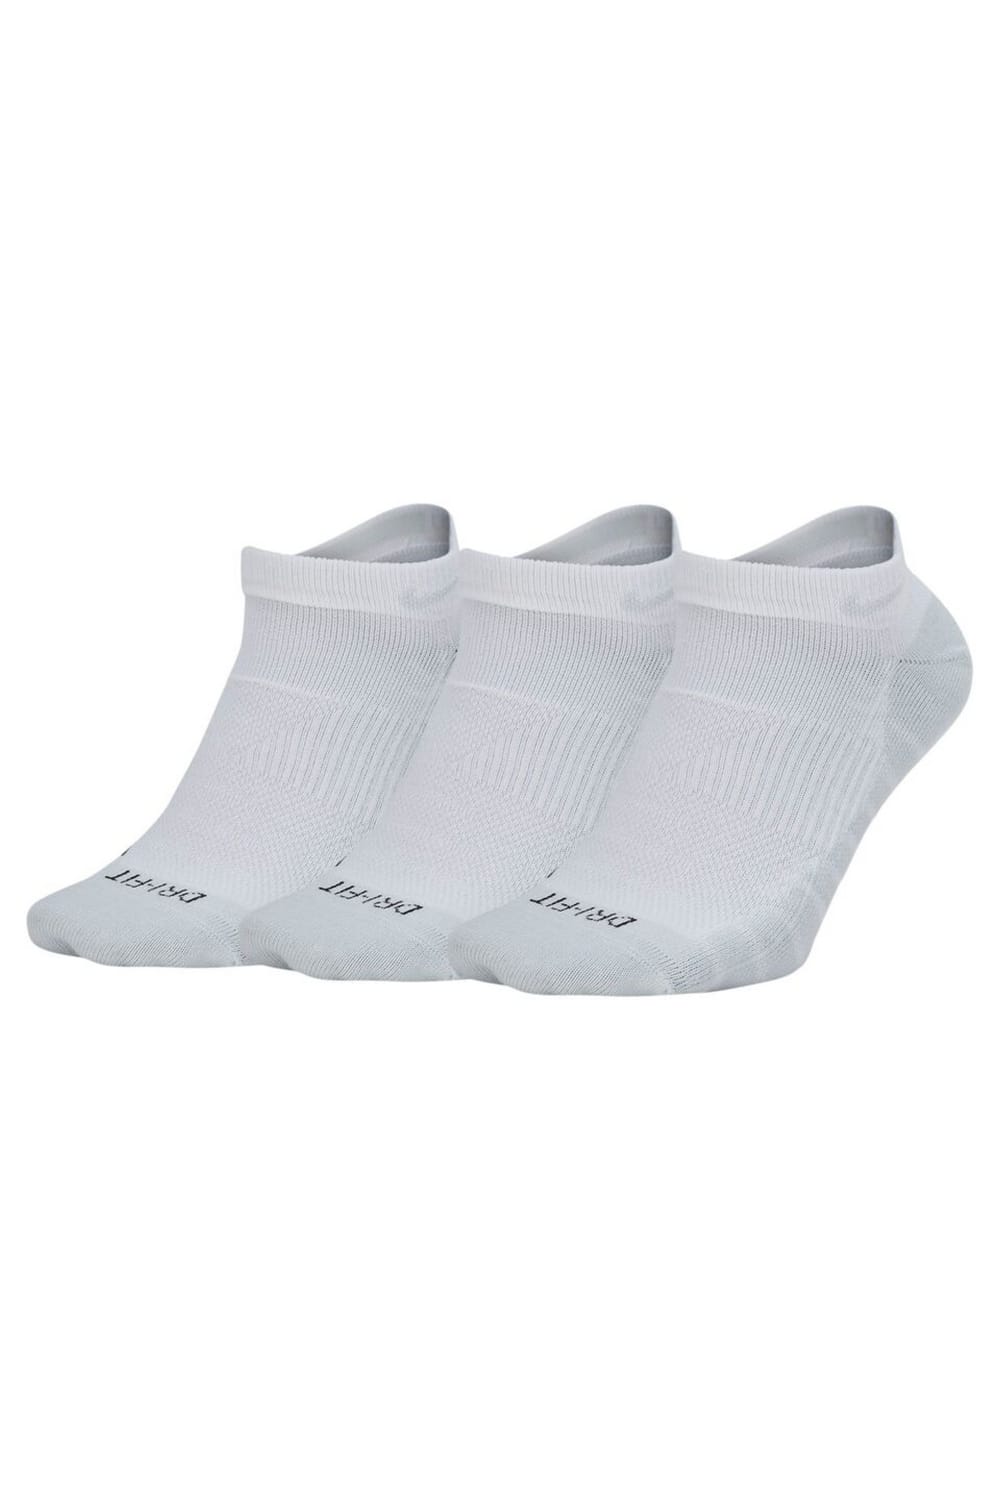 Nike Unisex Socks (Pack Of 3 Pairs) (White/Pure Platinum)